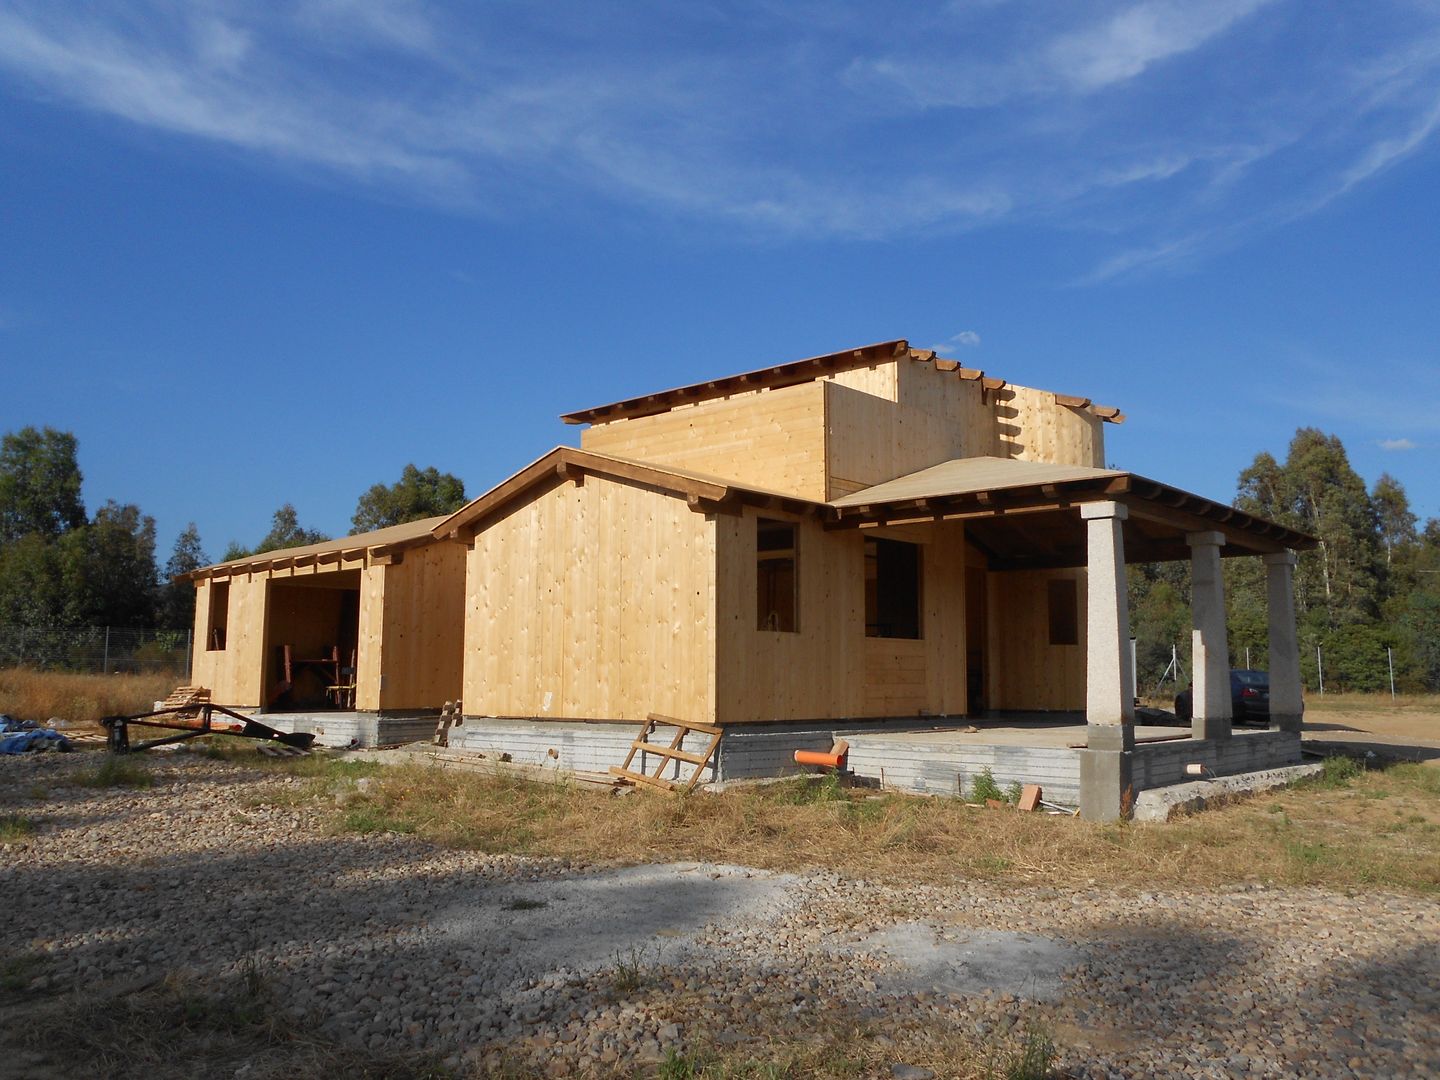 Realizzazione casa in bioedilizia costruita in legno con tecnologia X-lam, SOGEDI costruzioni SOGEDI costruzioni Mediterranean style house